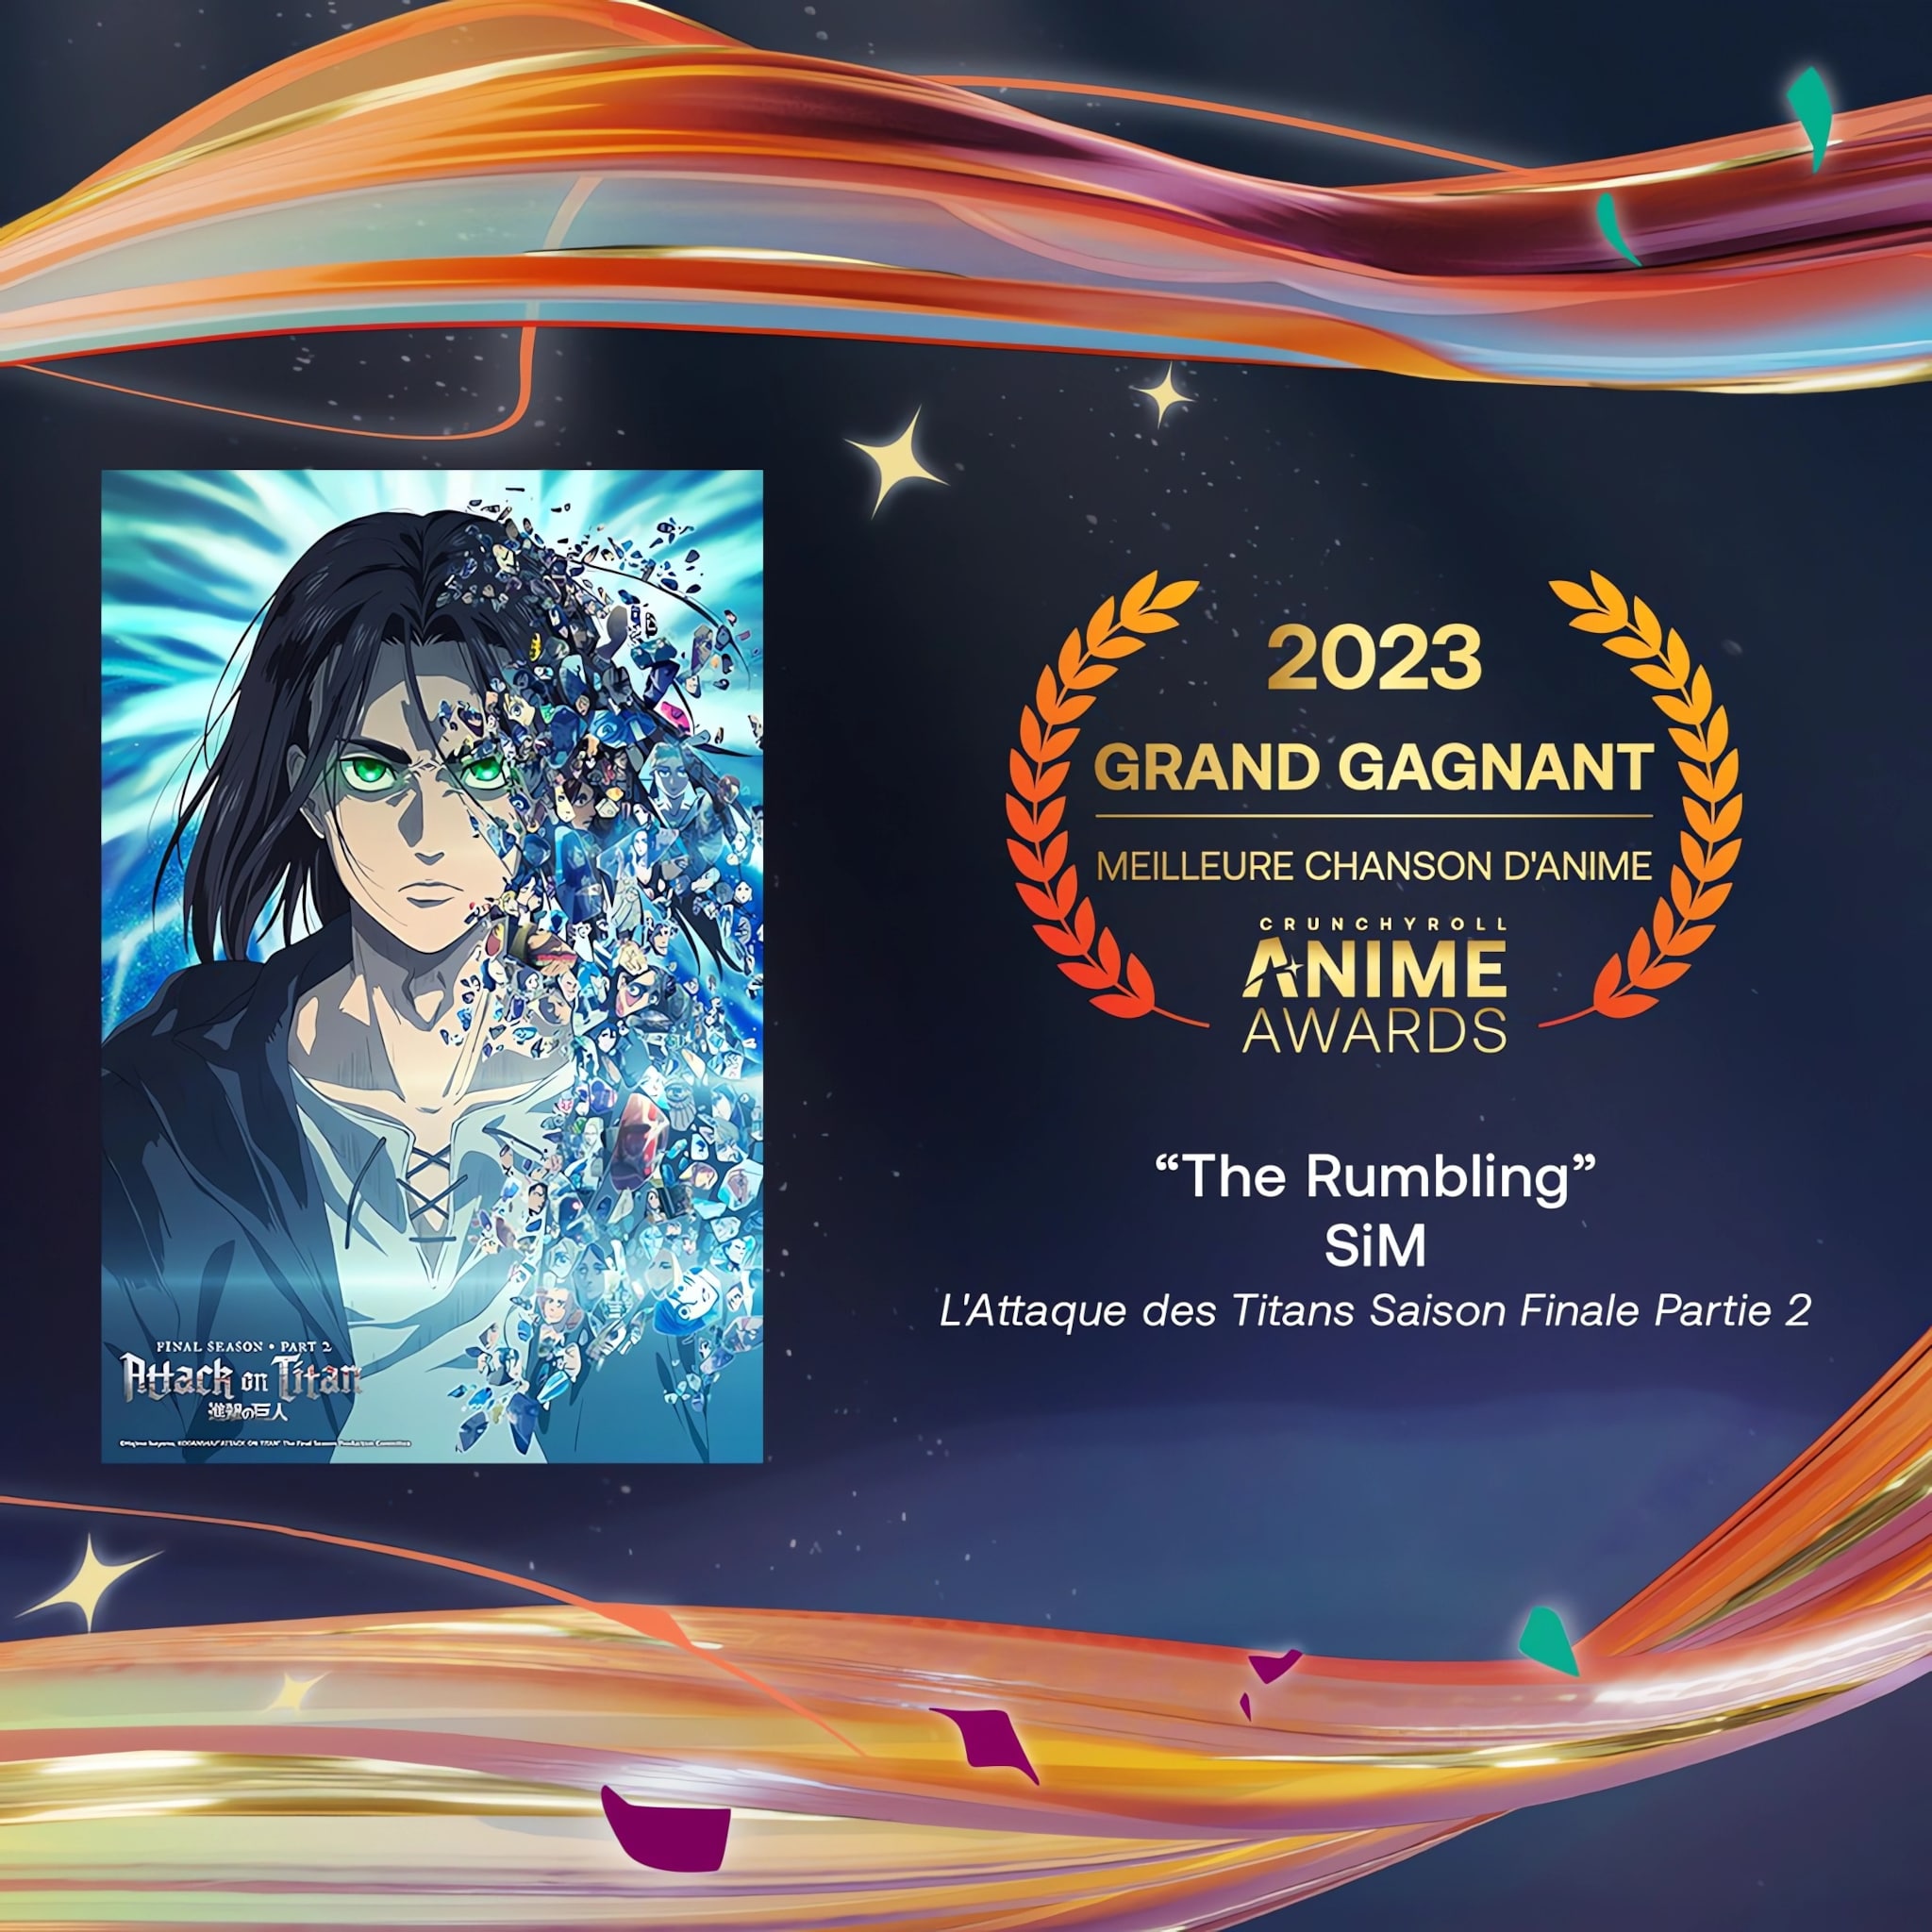 Prix de la meilleure chanson danime pour les Crunchyroll Anime Awards 2023